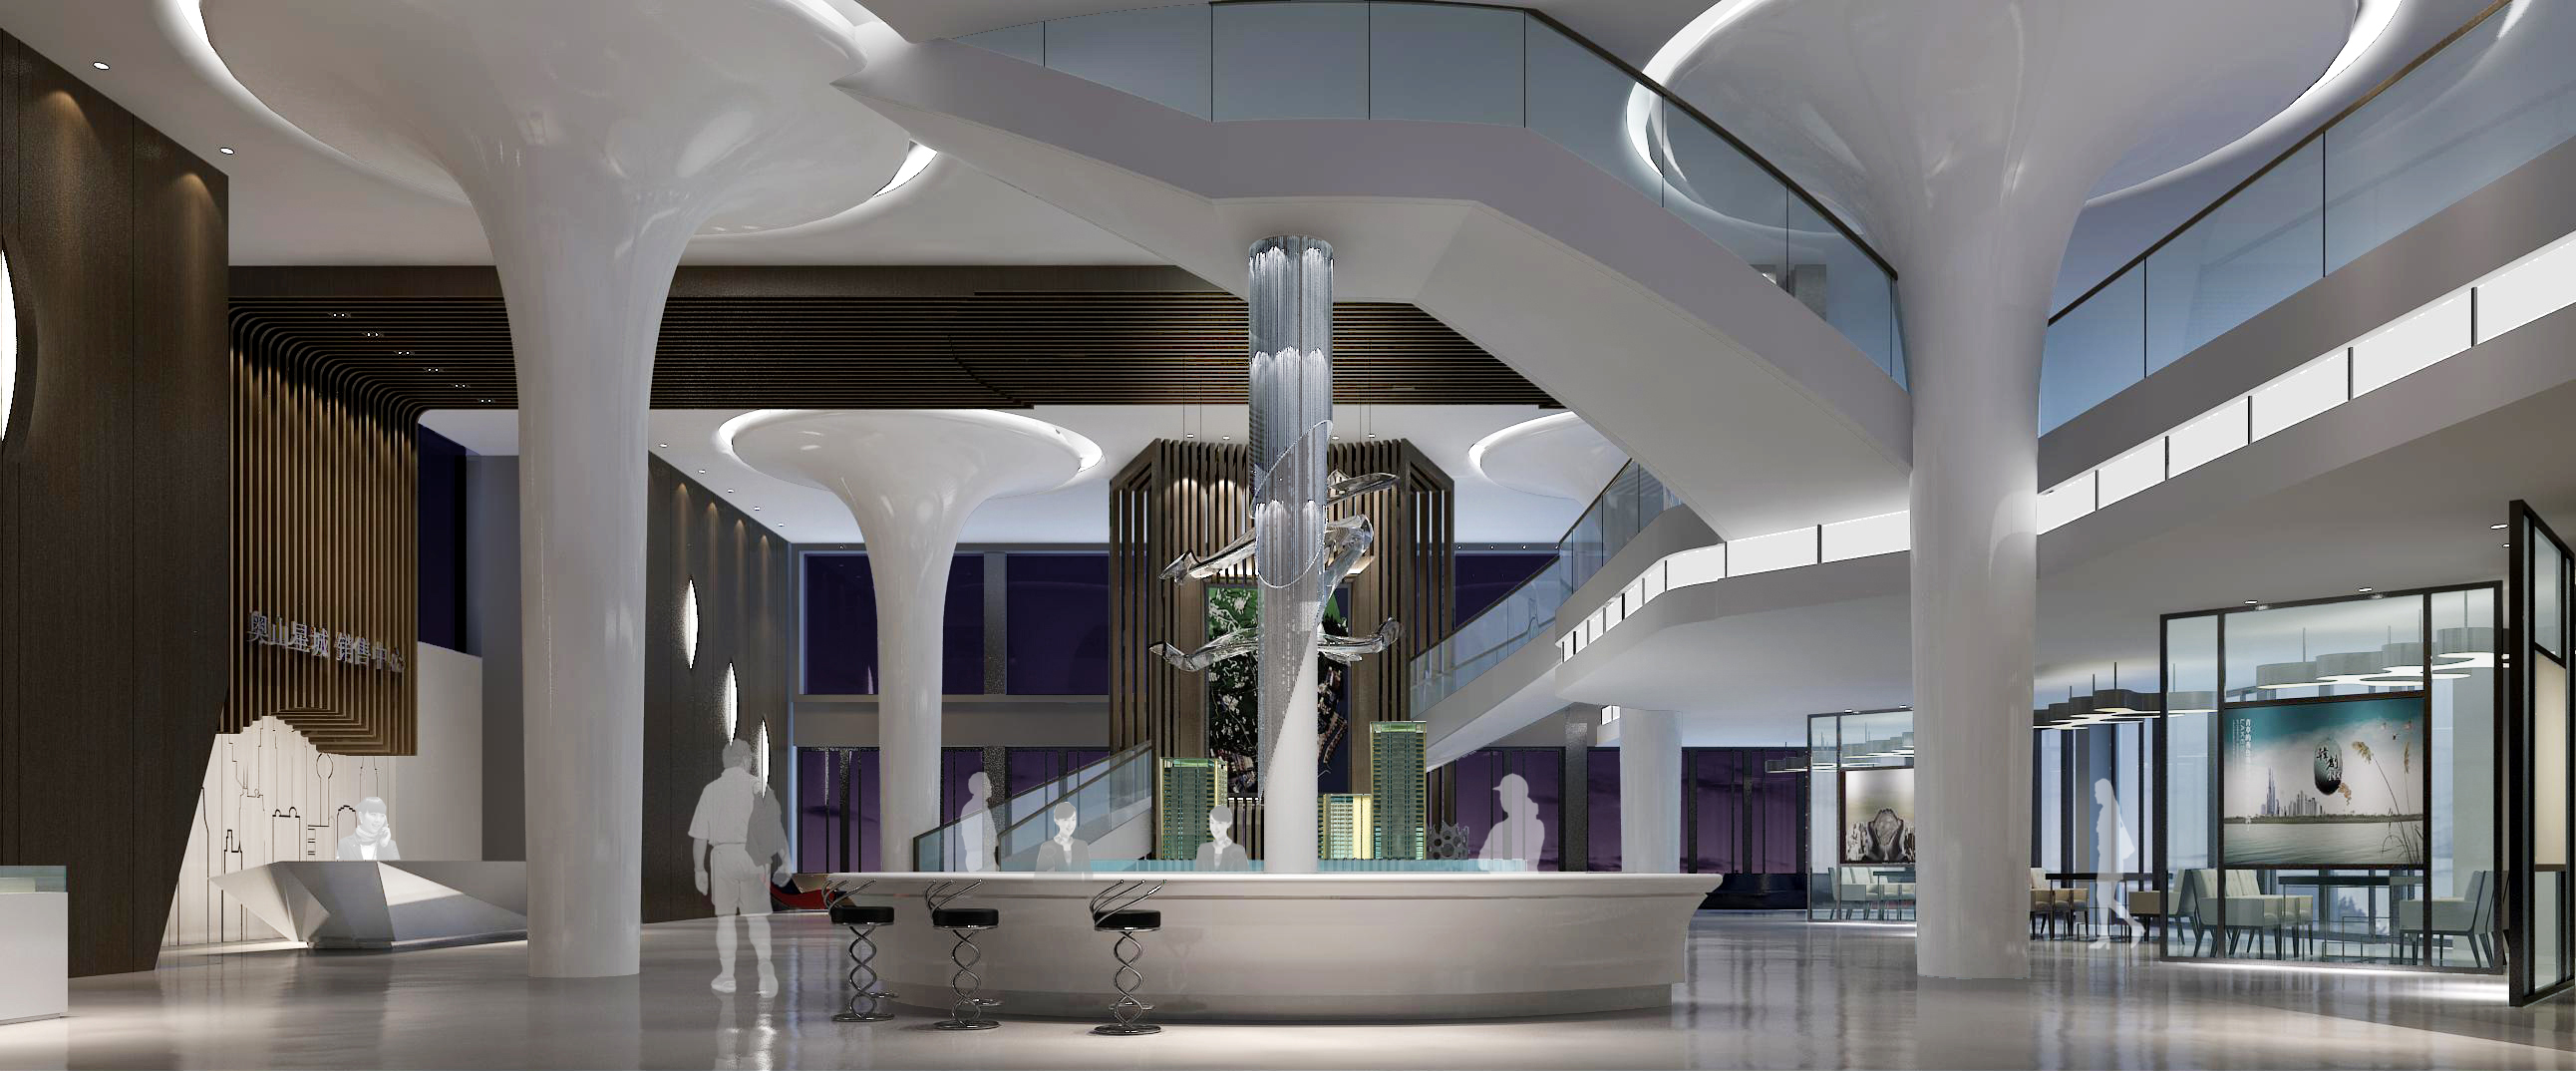 售楼处设计欧式中式现代高清售楼部效果图3D效果图-23